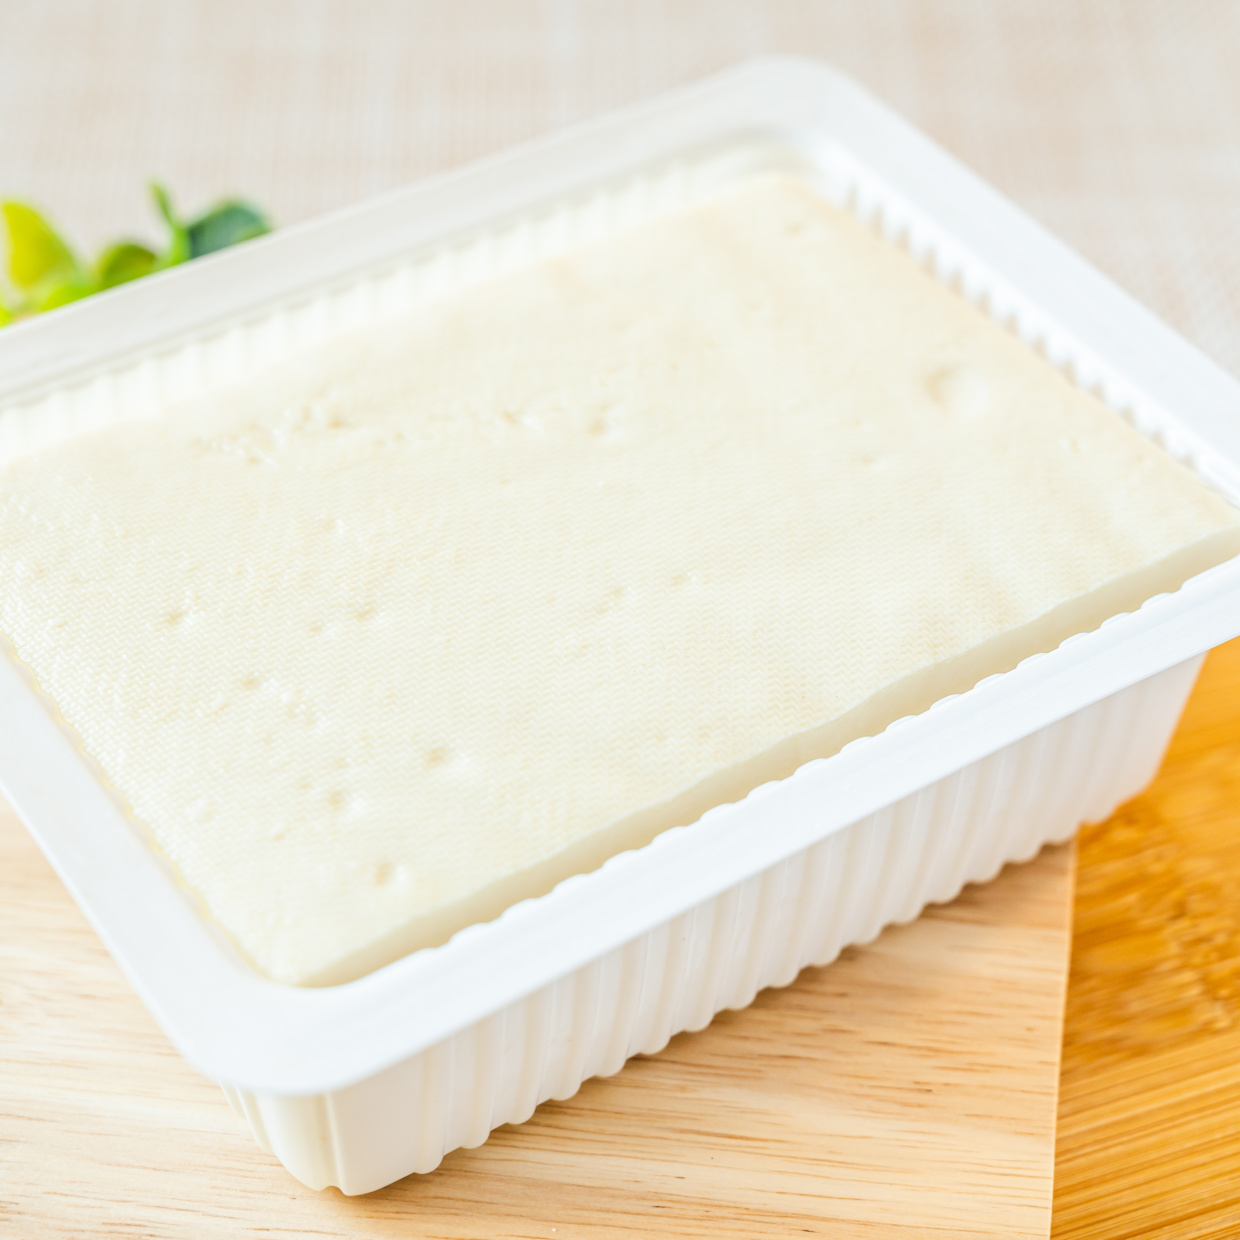  「豆腐のパック」捨てたら損。キッチンで大活躍する“5つの活用方法” 